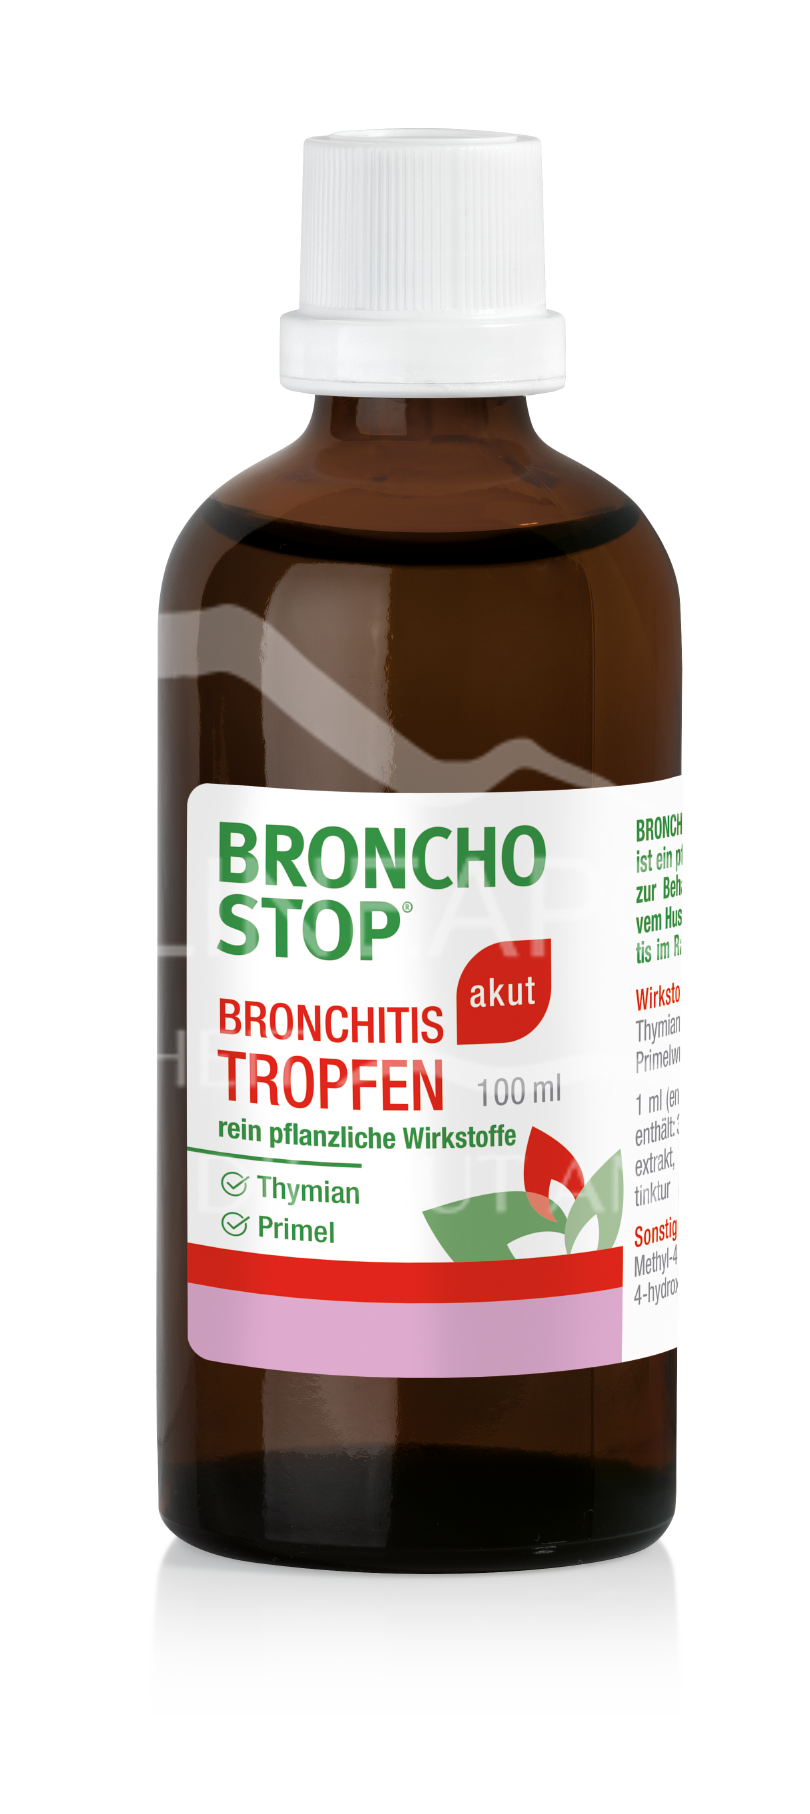 Bronchostop Bronchitis akut Tropfen 